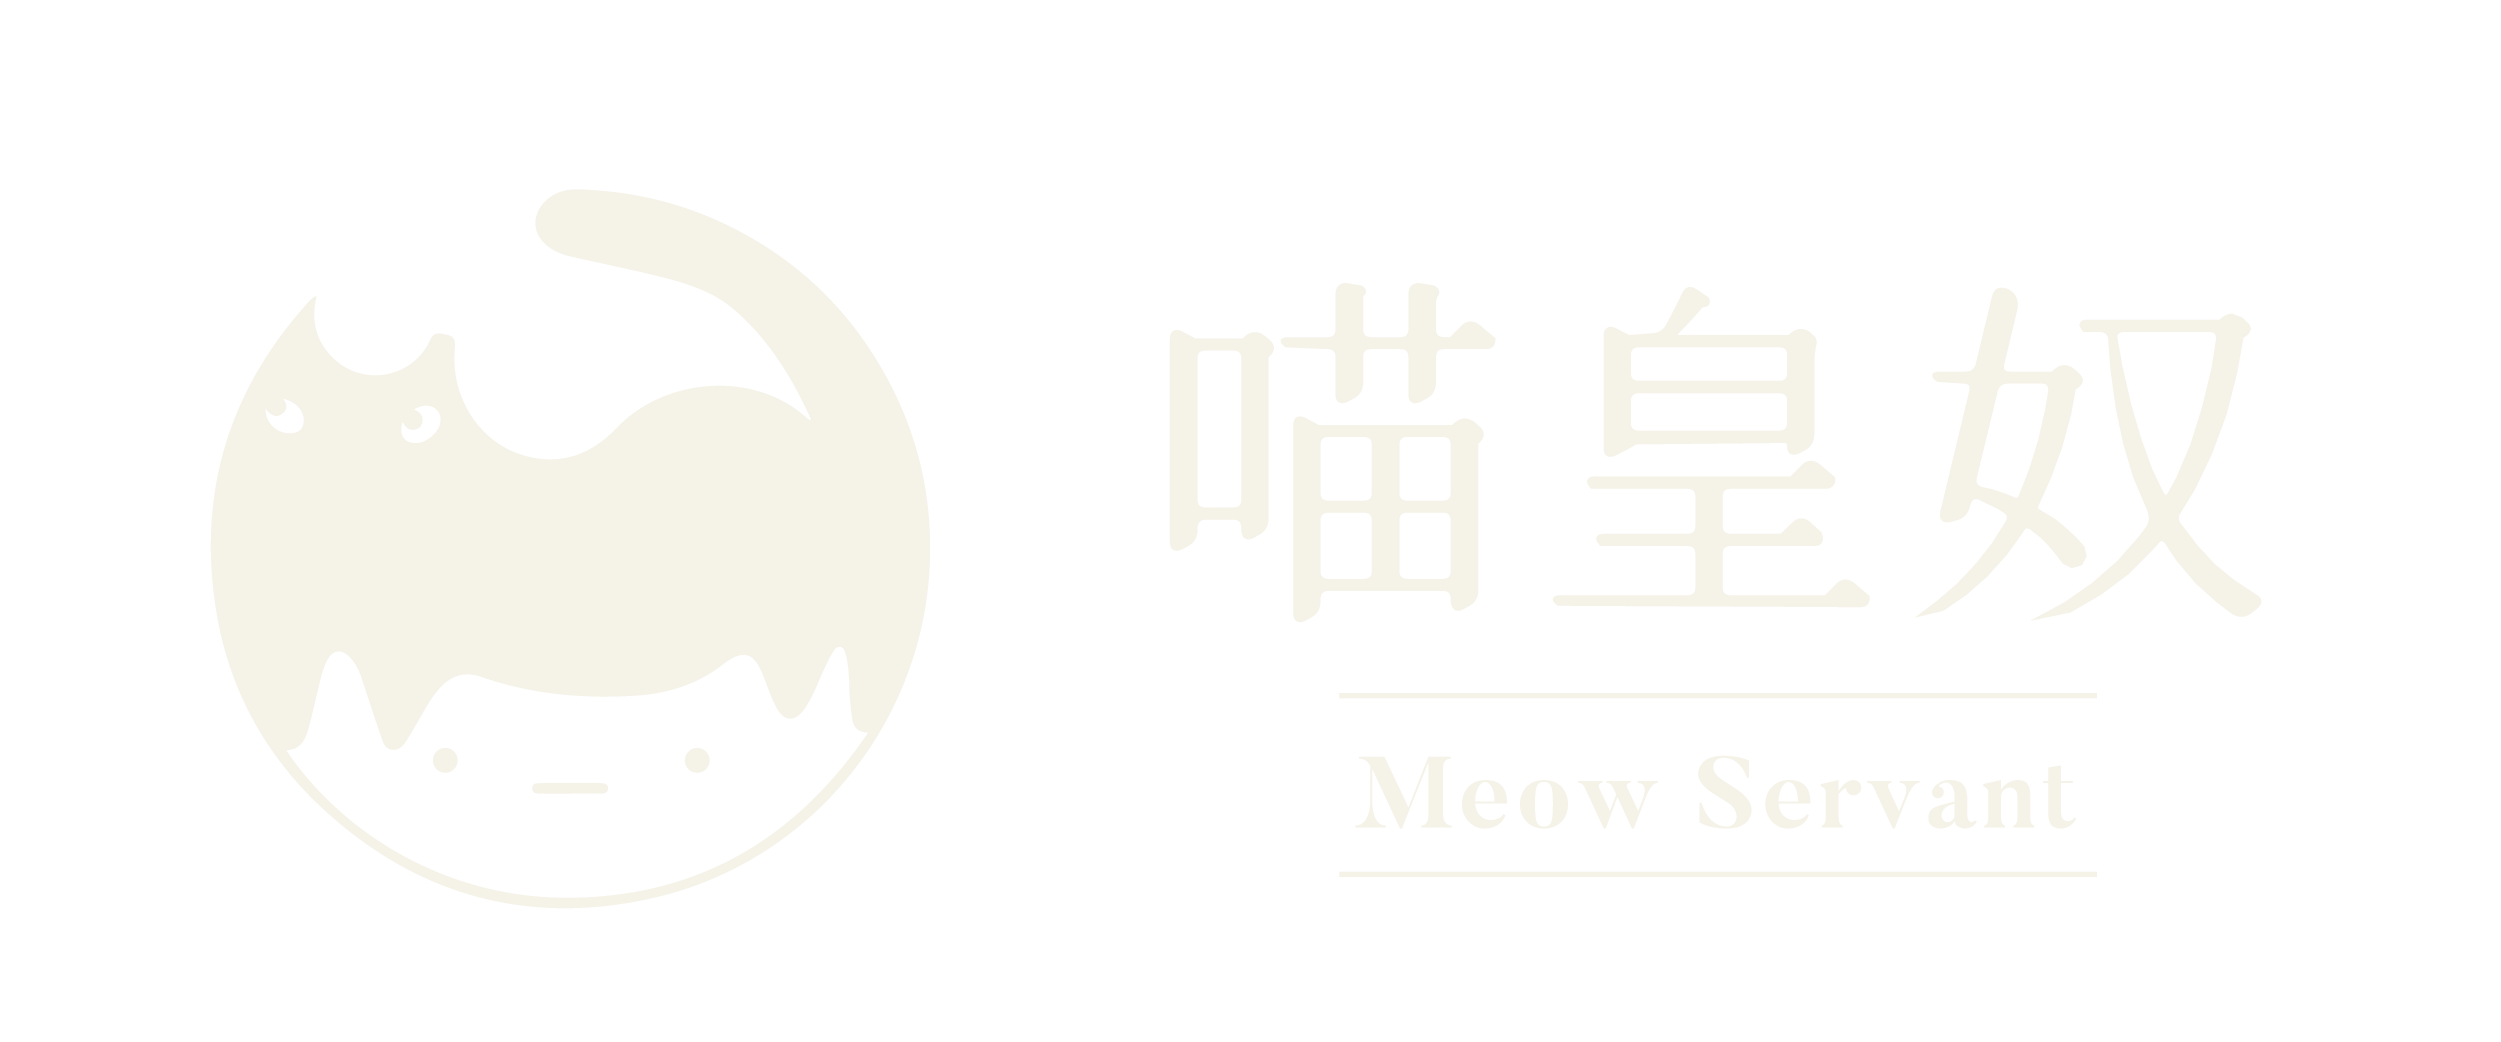 喵皇奴,Meow servant